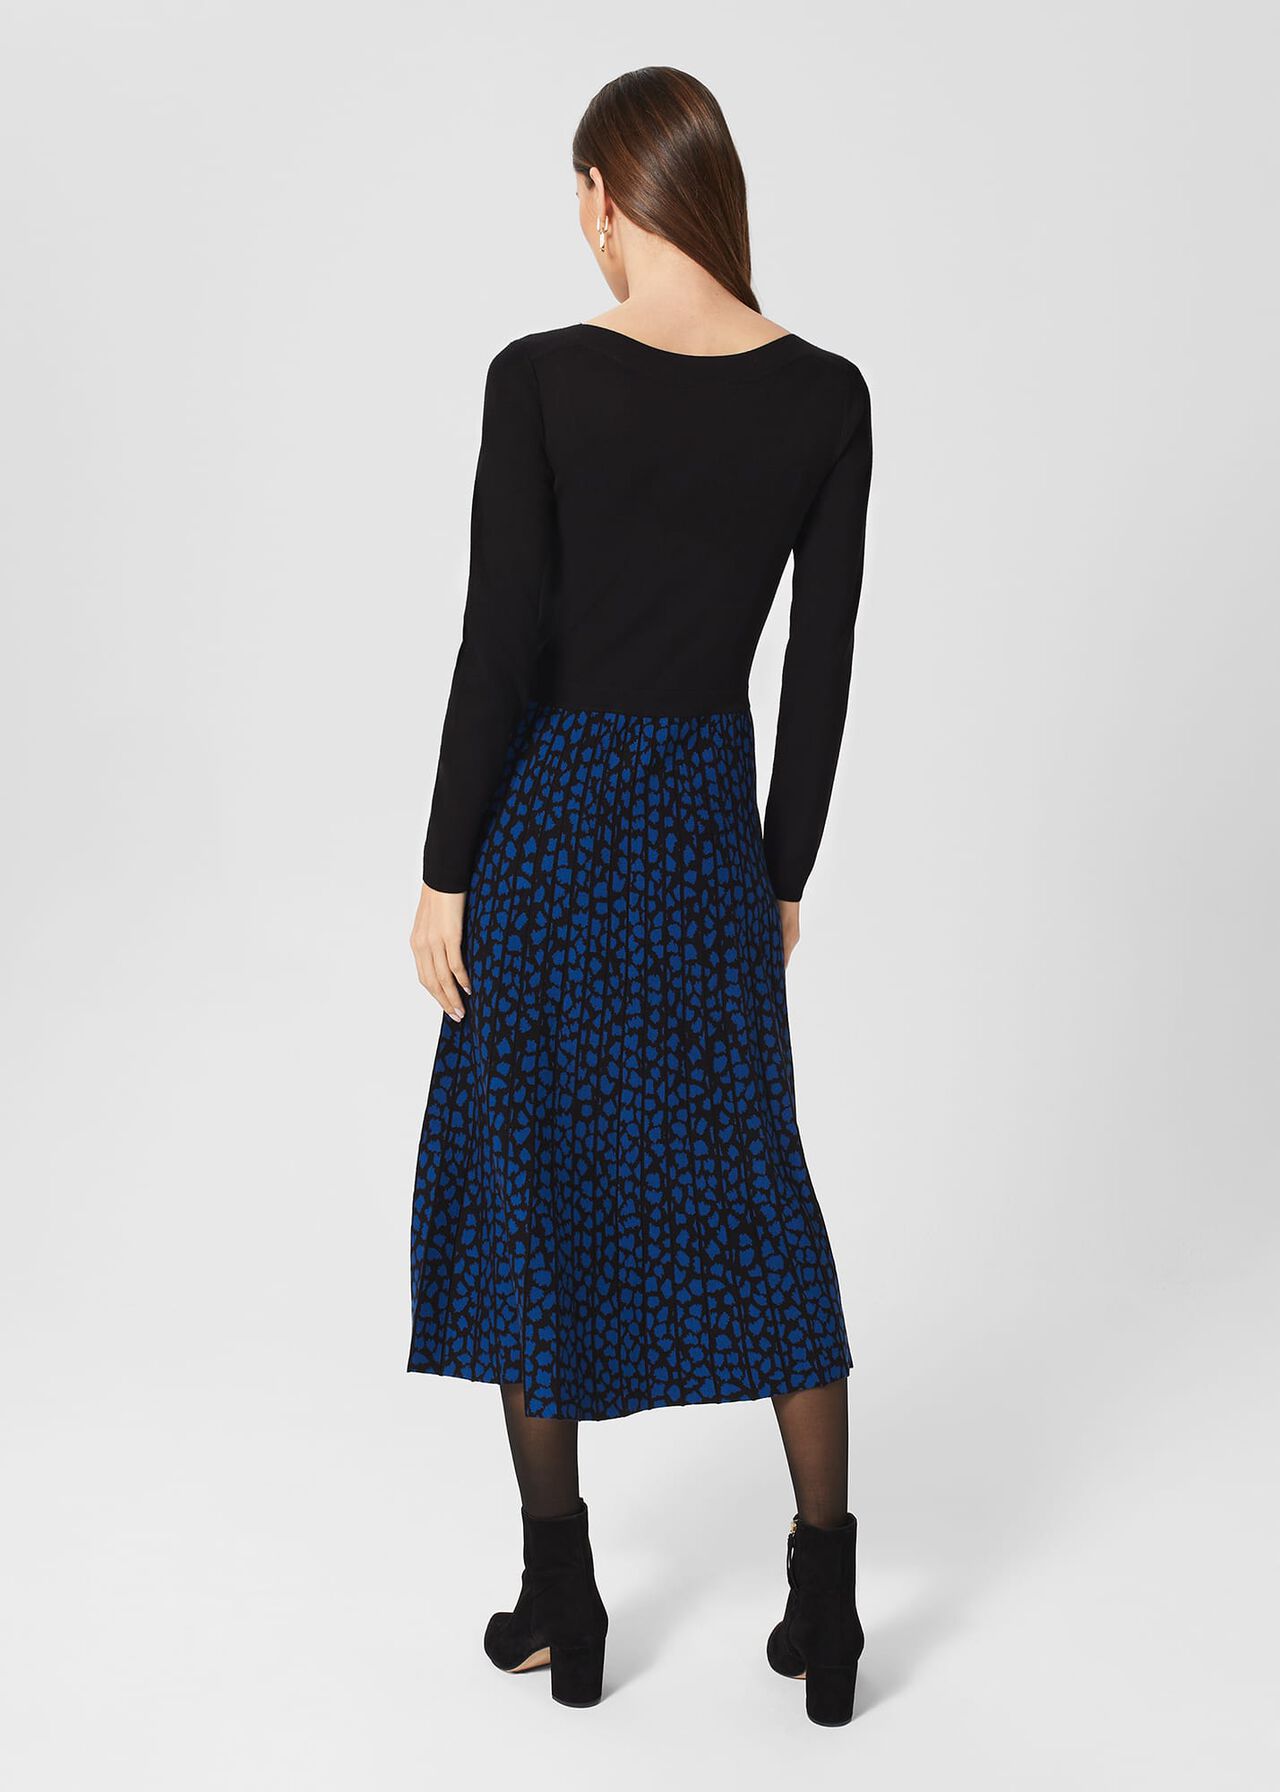 Elena Knit Dress, Black Blue, hi-res